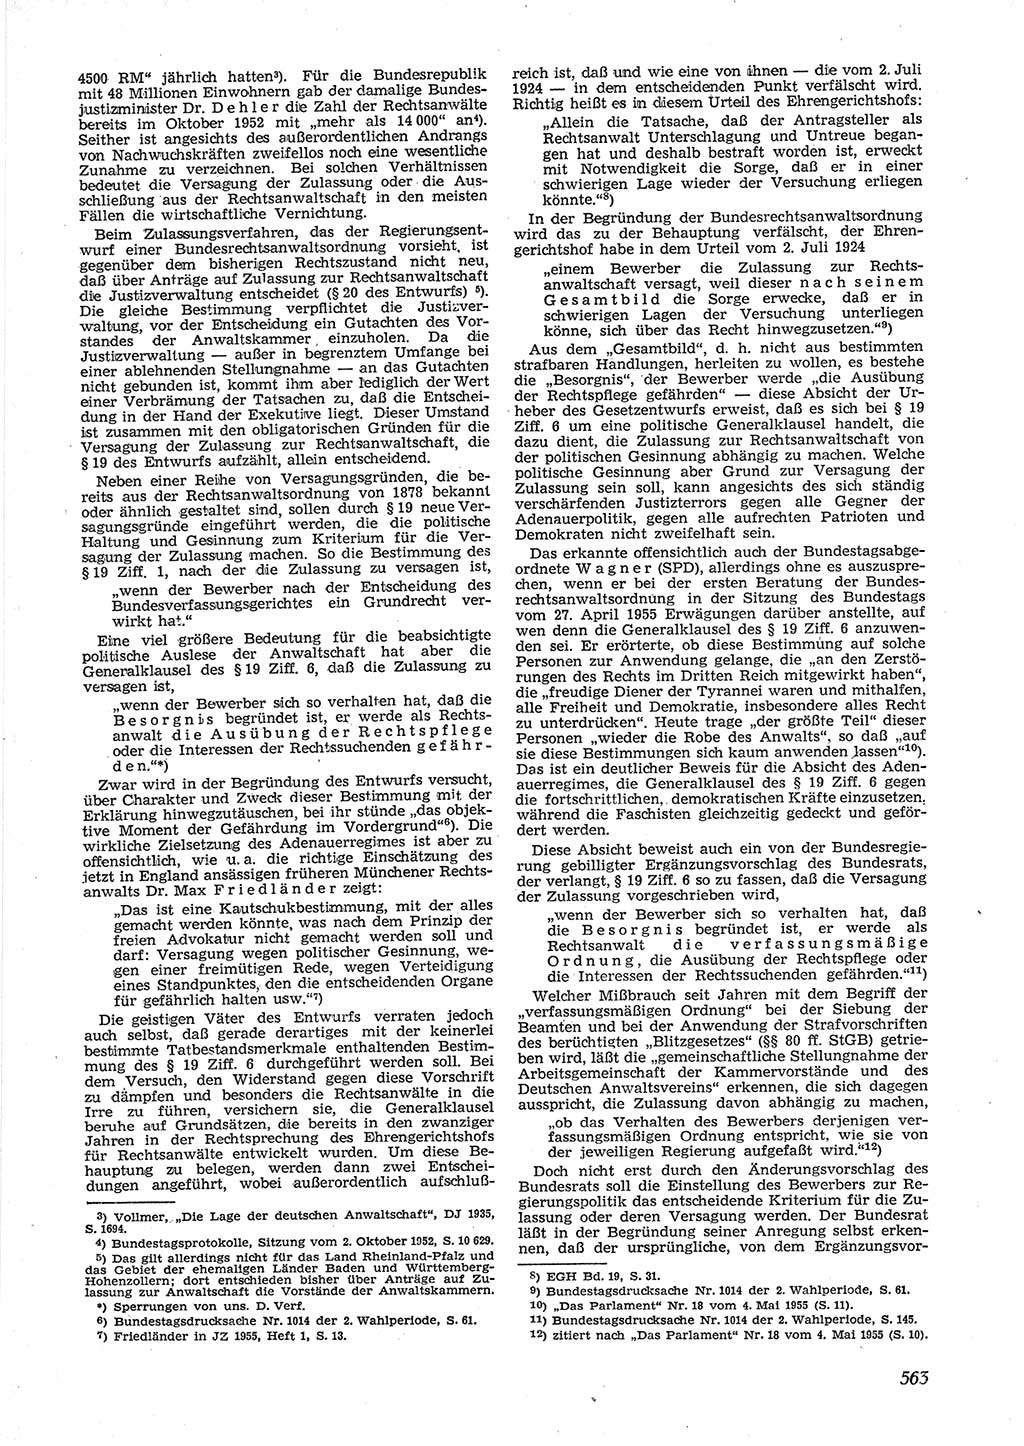 Neue Justiz (NJ), Zeitschrift für Recht und Rechtswissenschaft [Deutsche Demokratische Republik (DDR)], 9. Jahrgang 1955, Seite 563 (NJ DDR 1955, S. 563)